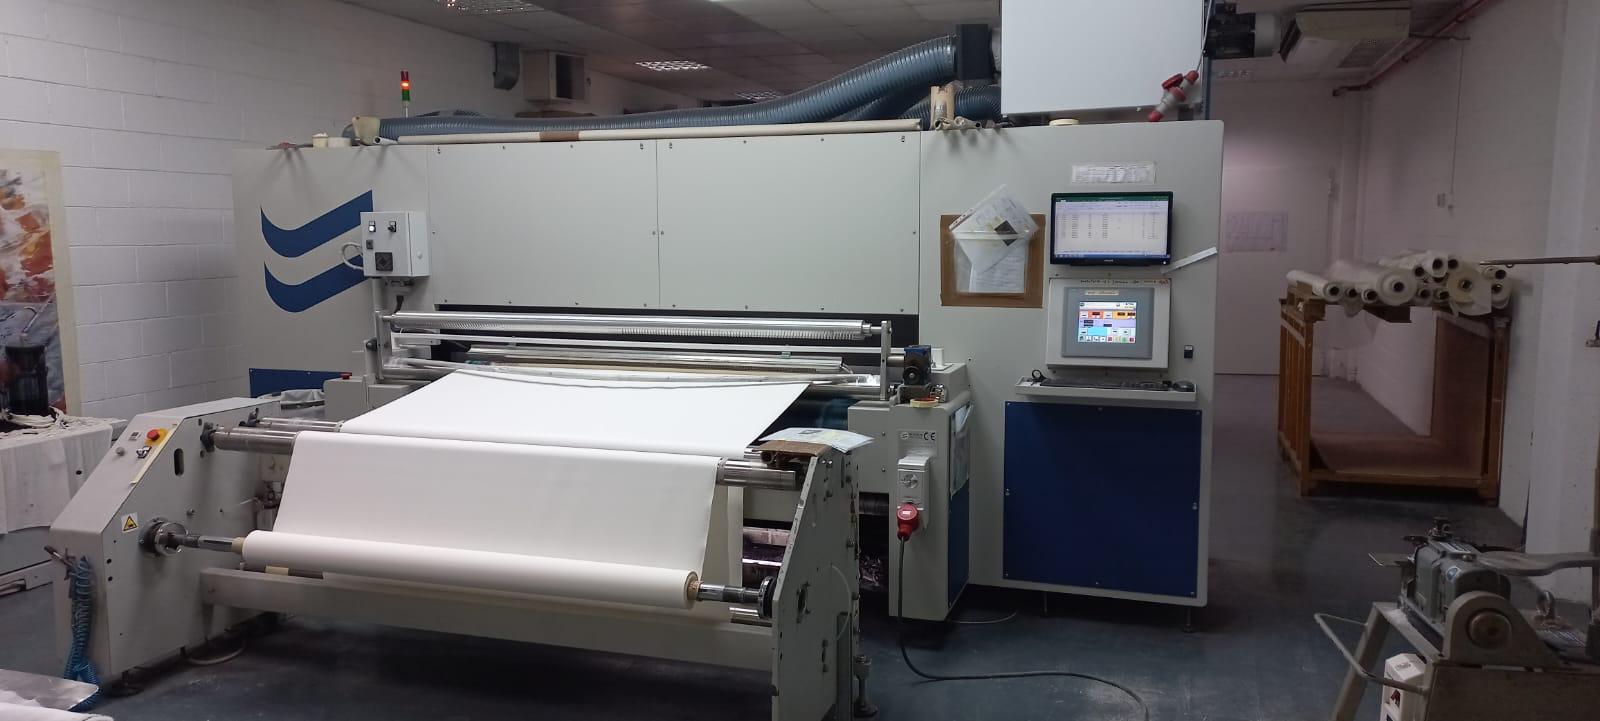 چاپ دیجیتال رجیانی در 1800 میلی متر استفاده شده است